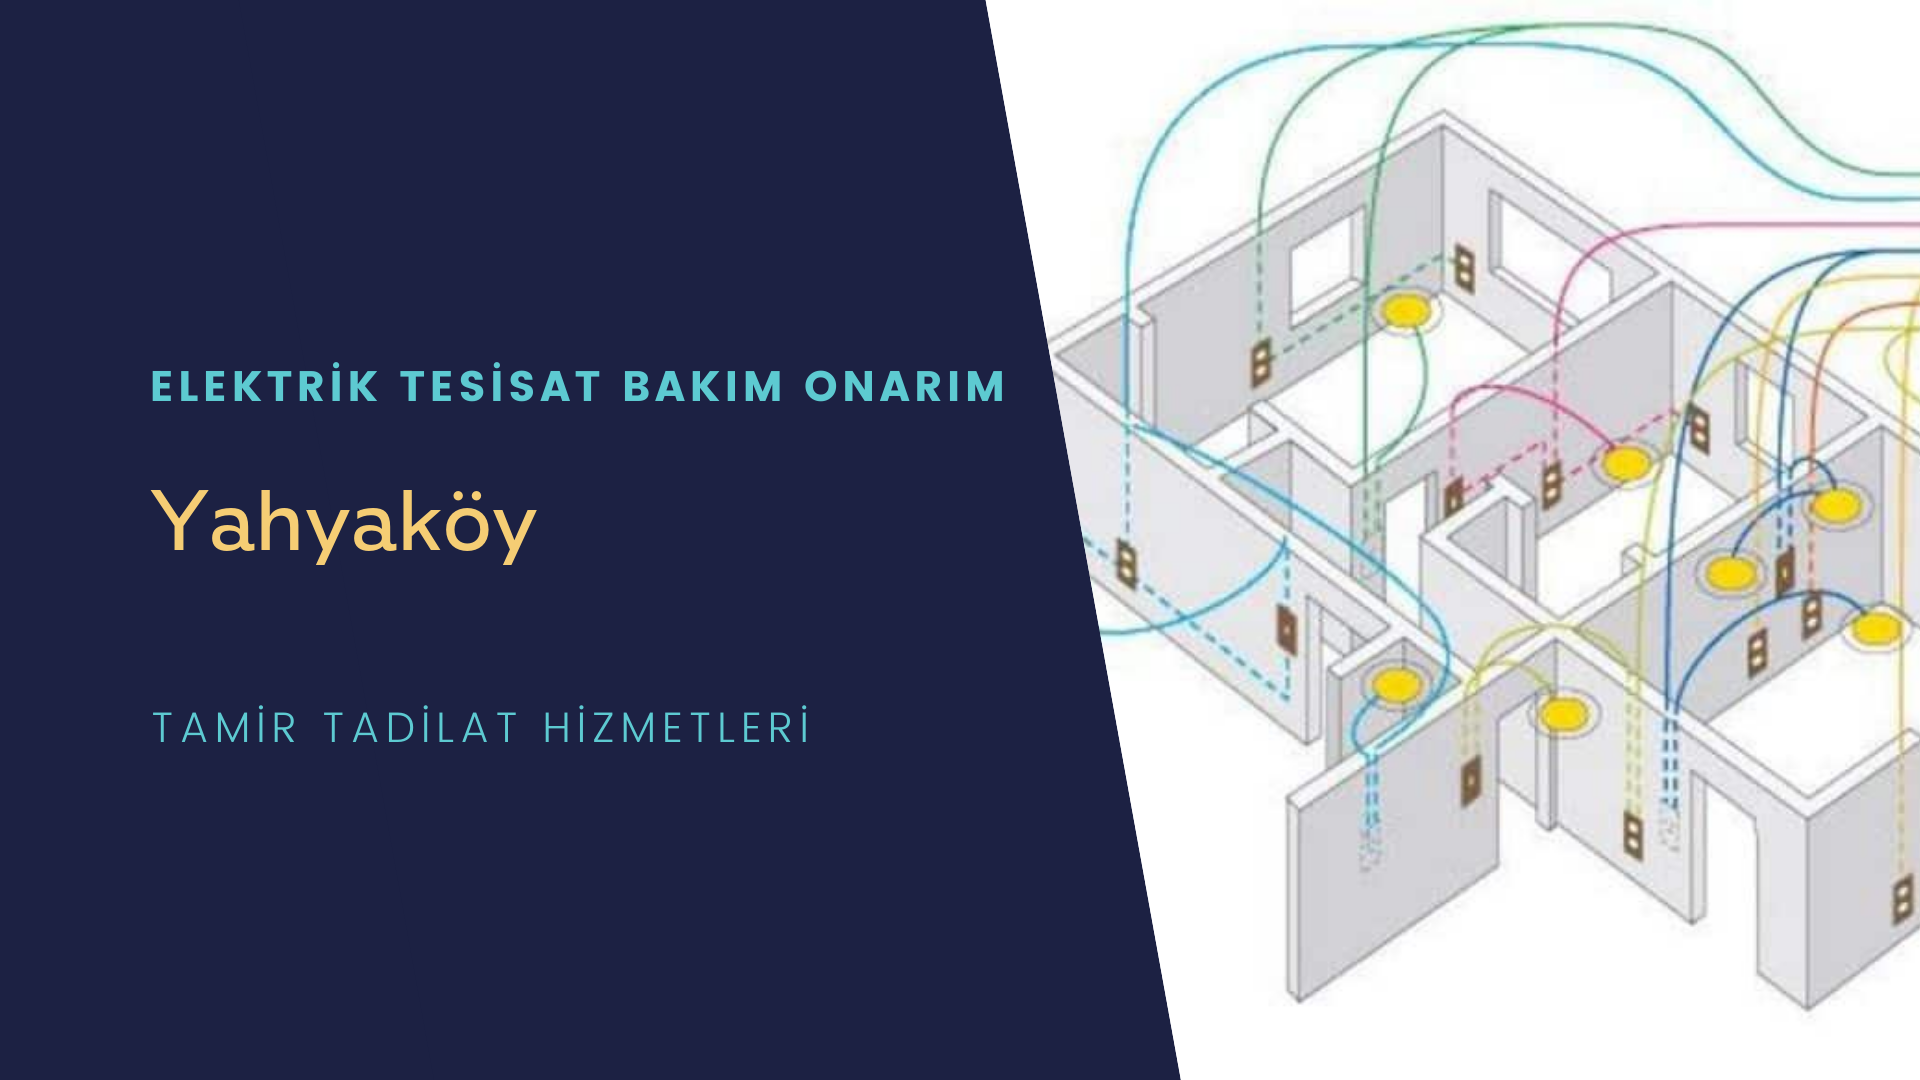 Yahyaköy'de elektrik tesisatı ustalarımı arıyorsunuz doğru adrestenizi Yahyaköy elektrik tesisatı ustalarımız 7/24 sizlere hizmet vermekten mutluluk duyar.